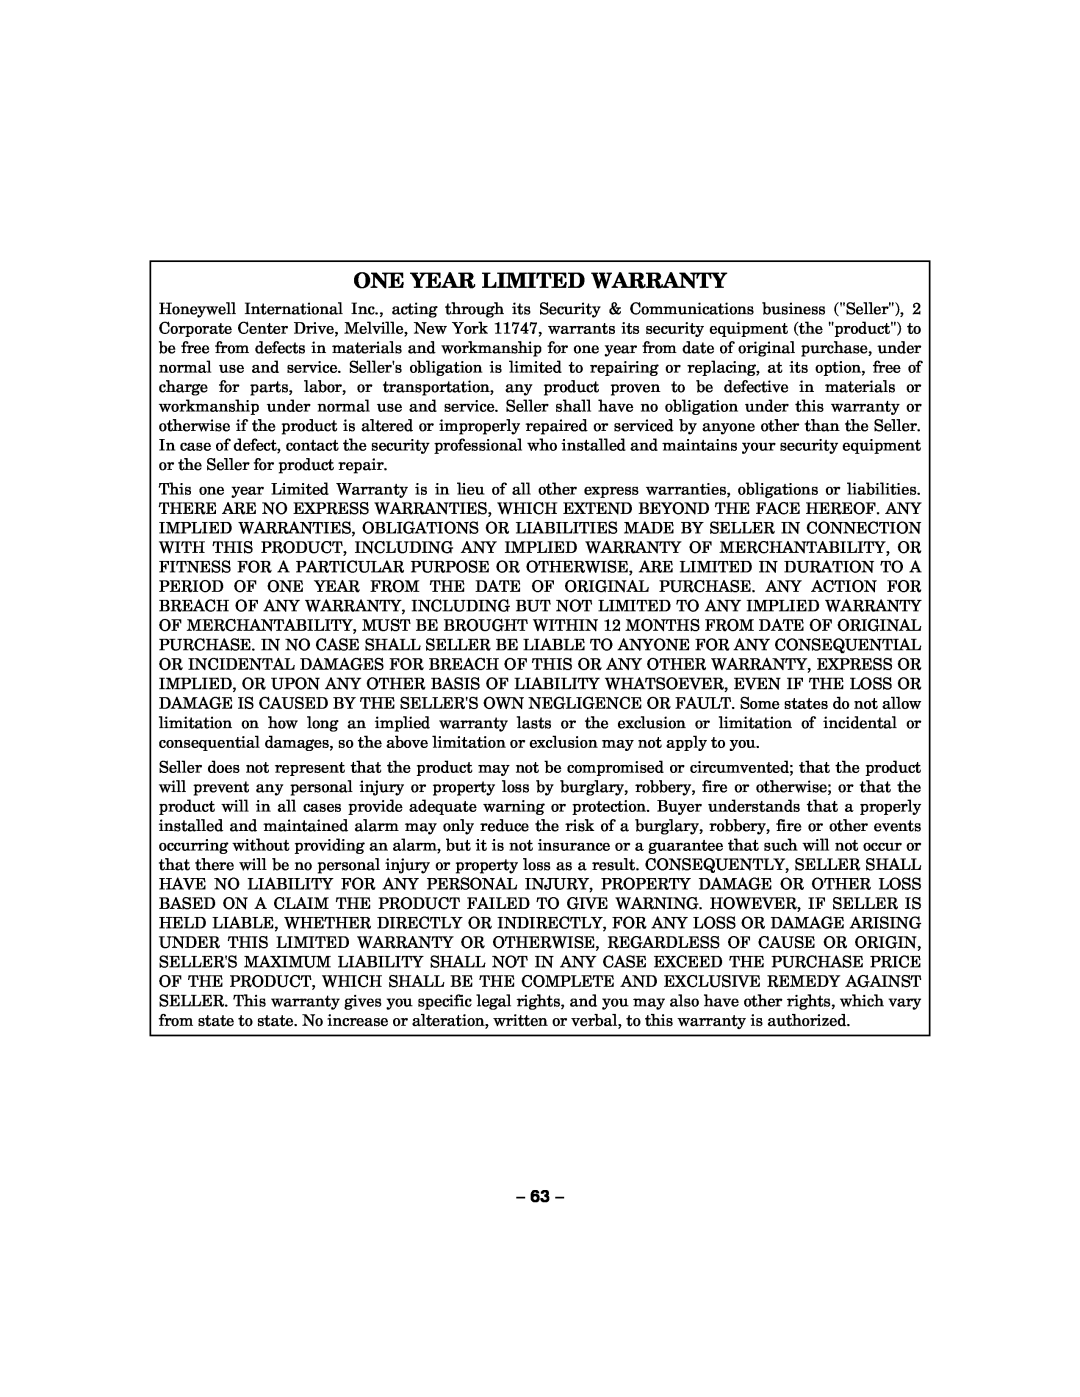 Honeywell LYNXR-2 manual One Year Limited Warranty, 63 